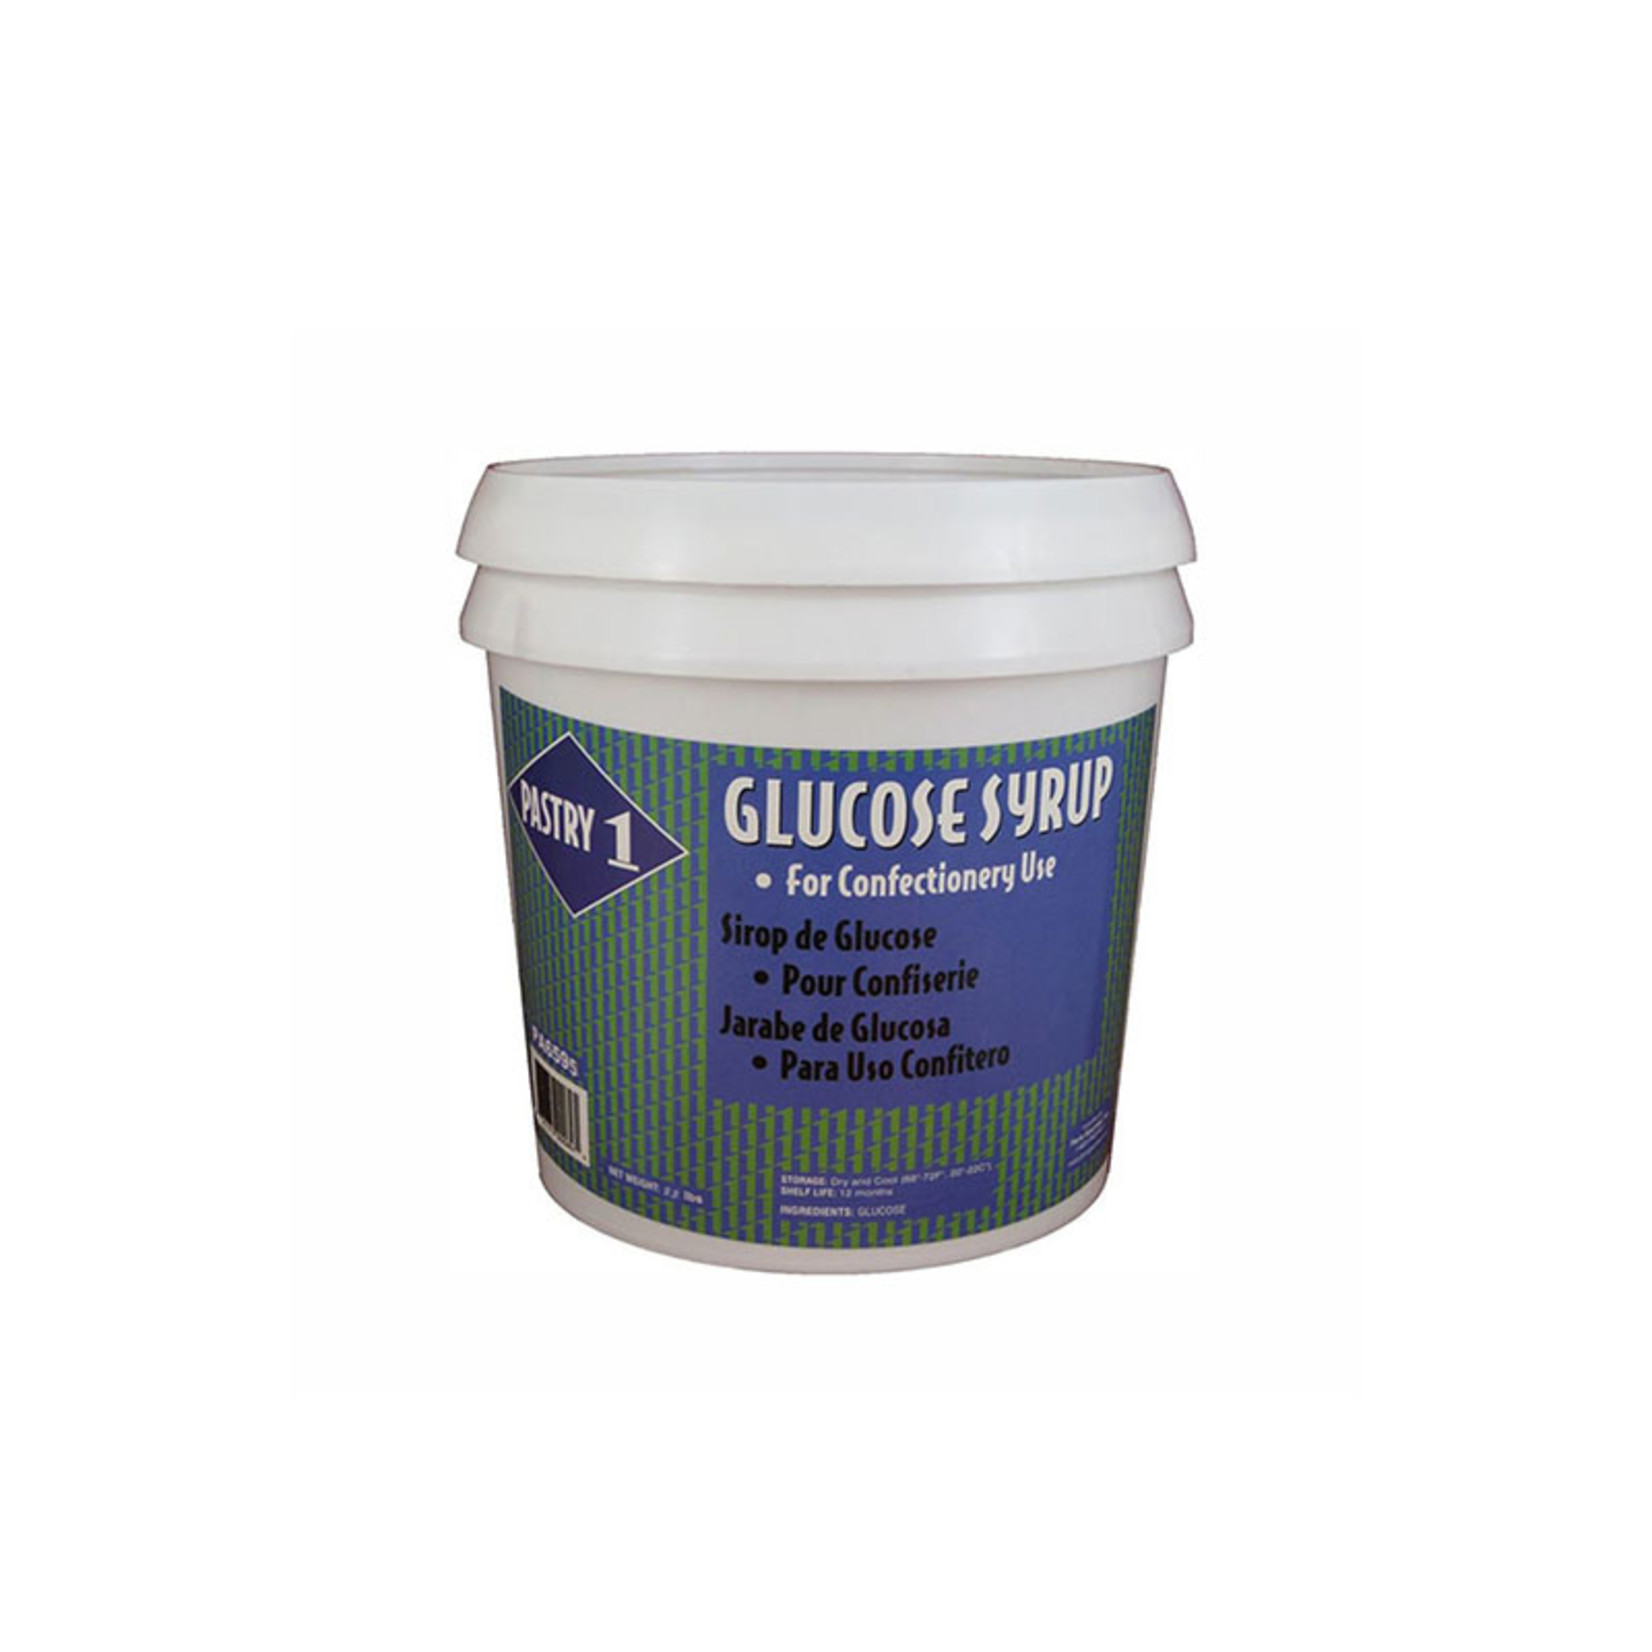 Sirop de glucose PME